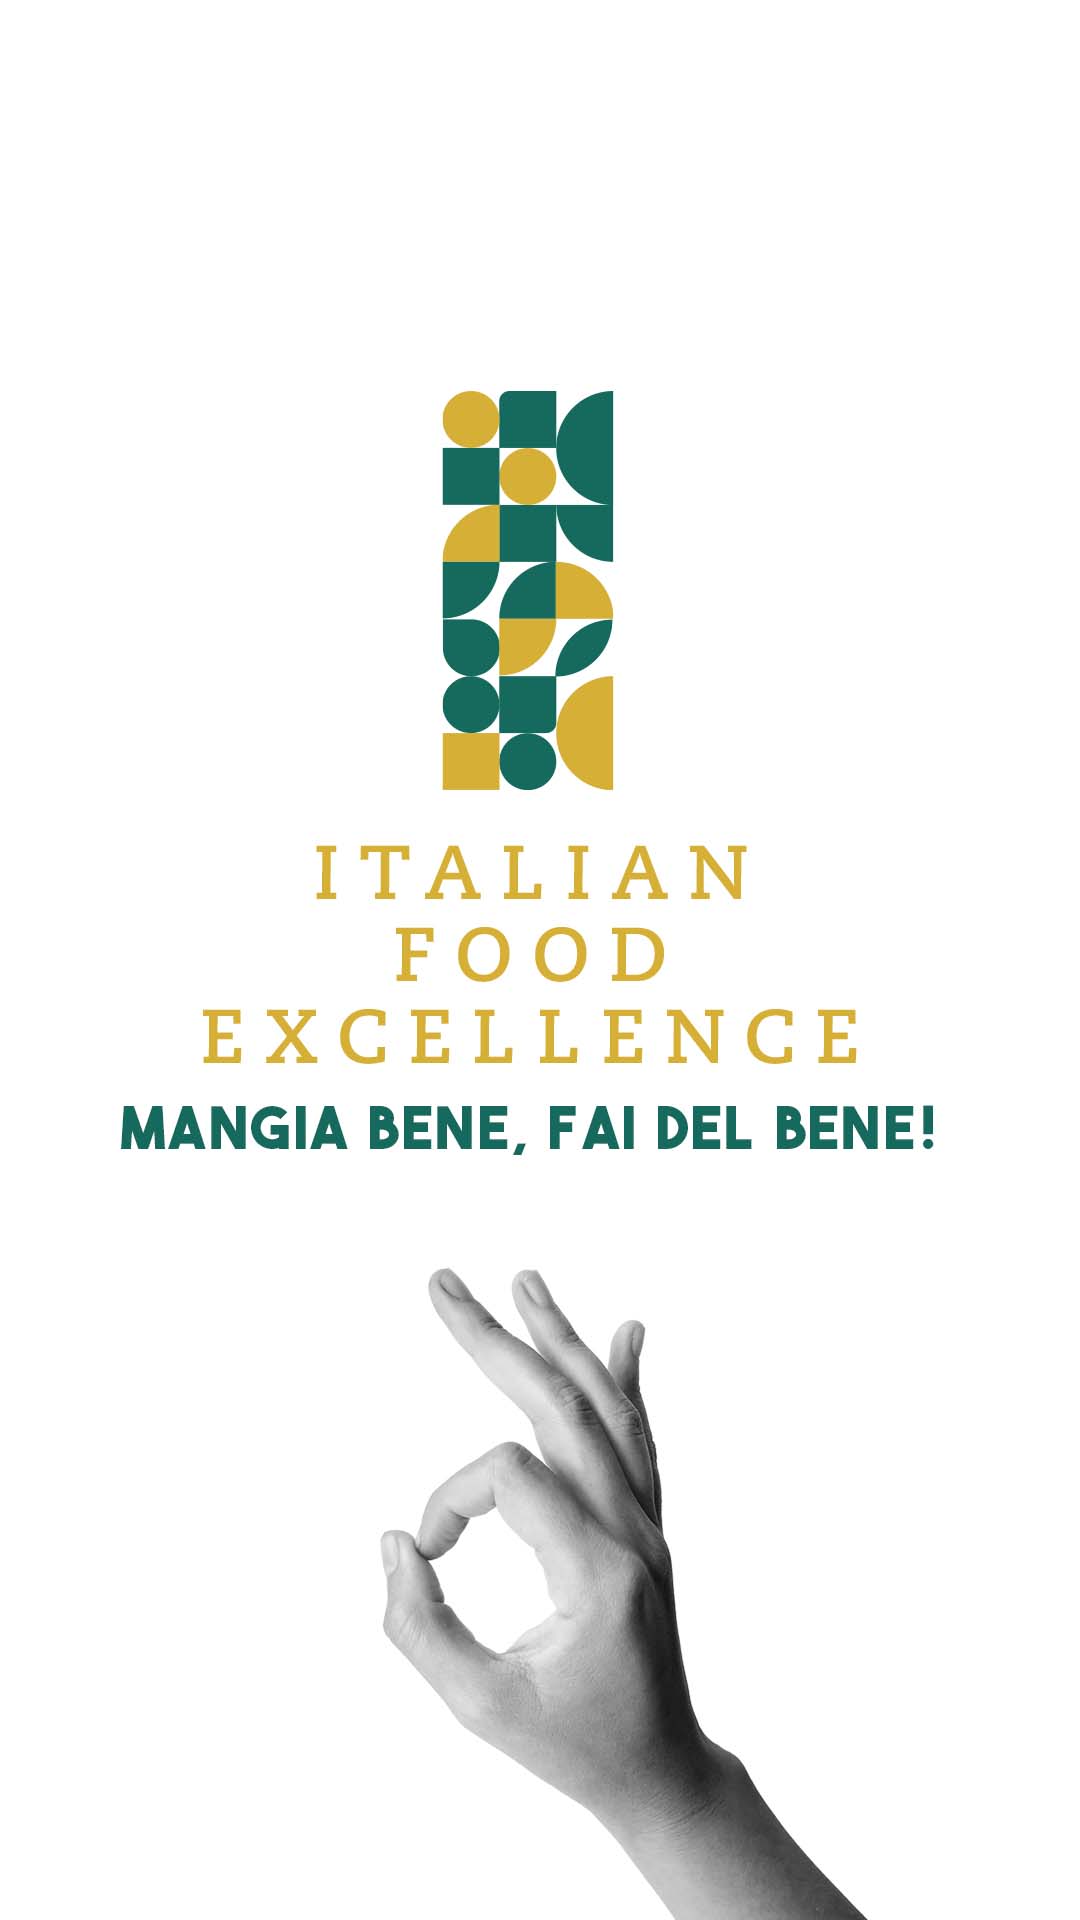 Italian food excellence - mangia bene, fai del bene